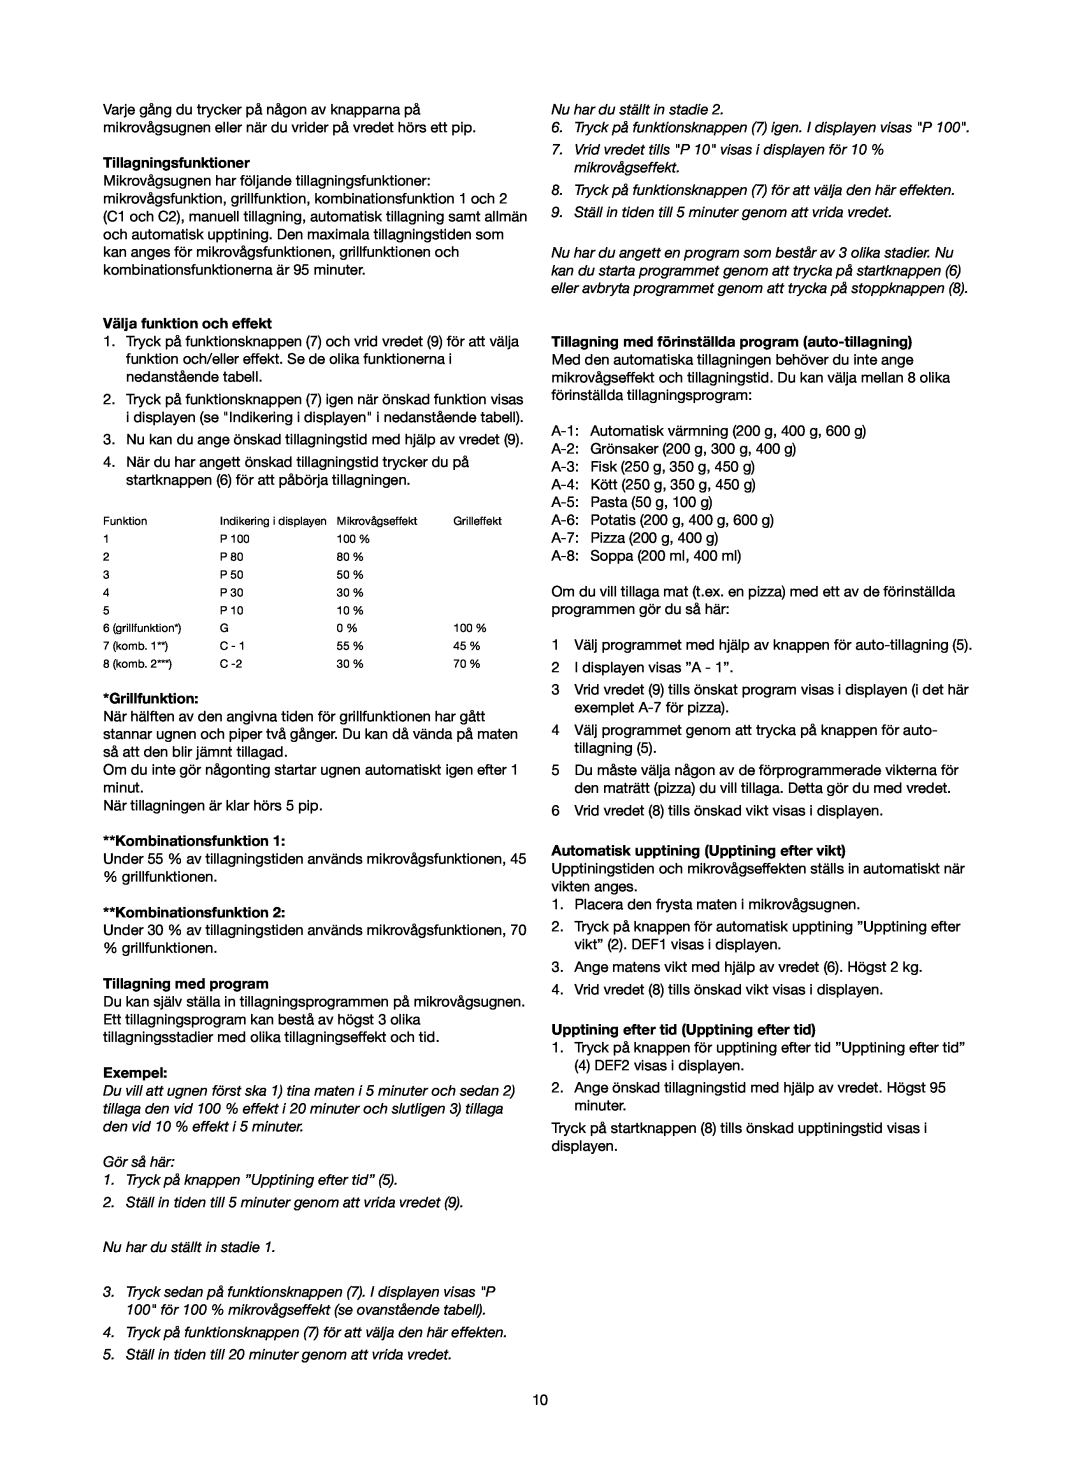 Melissa 753-089 manual Tillagningsfunktioner, Välja funktion och effekt, Tillagning med program, Exempel, Grillfunktion 